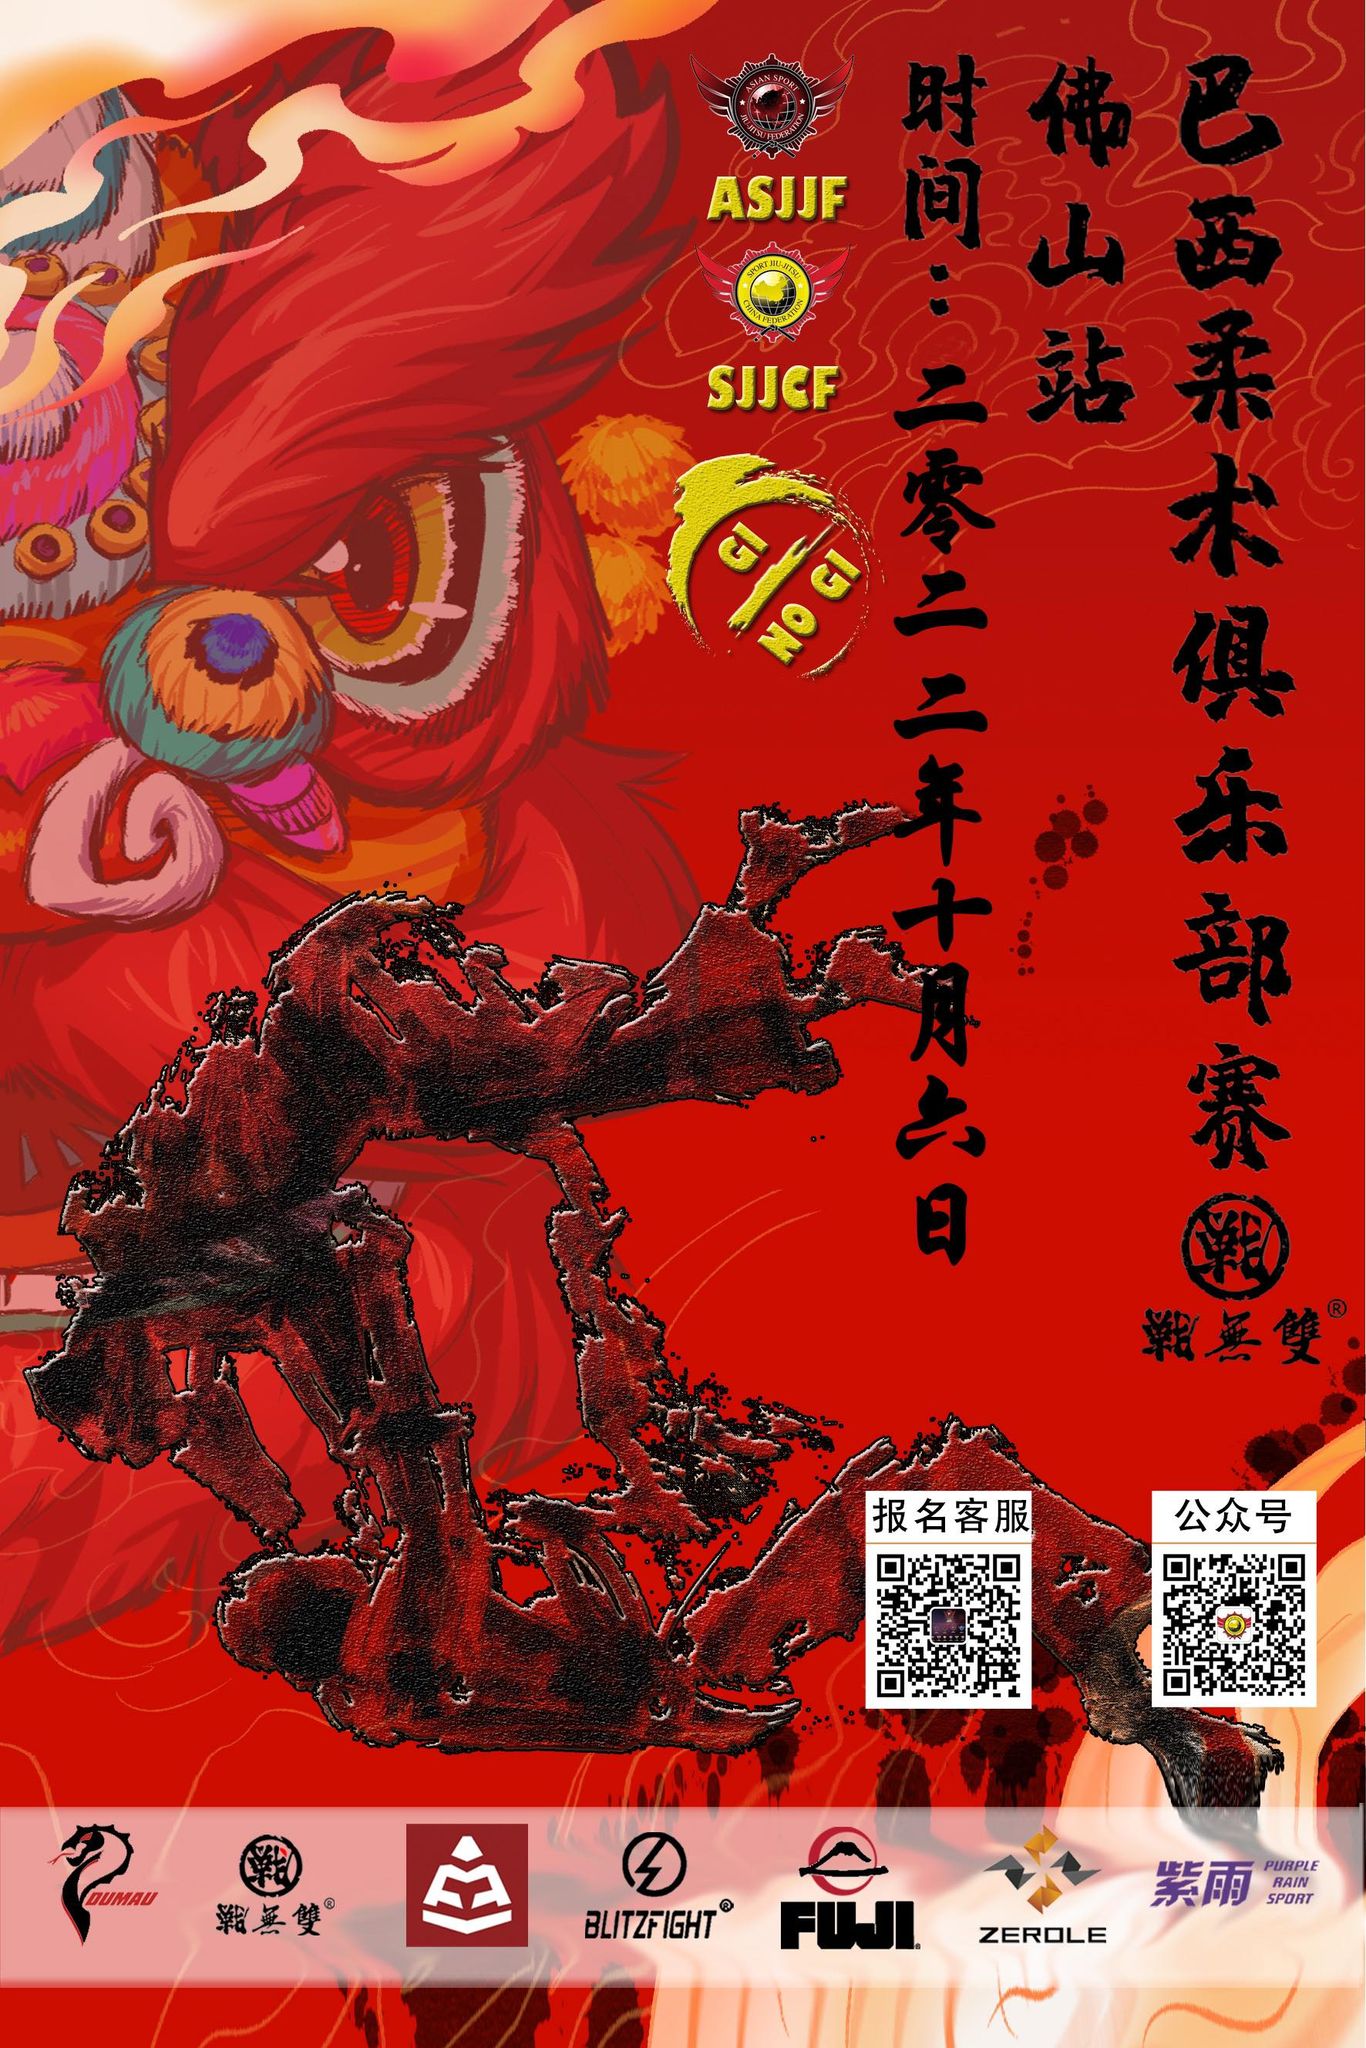 sjjcf Guangdong jiu jitsu championship 2022